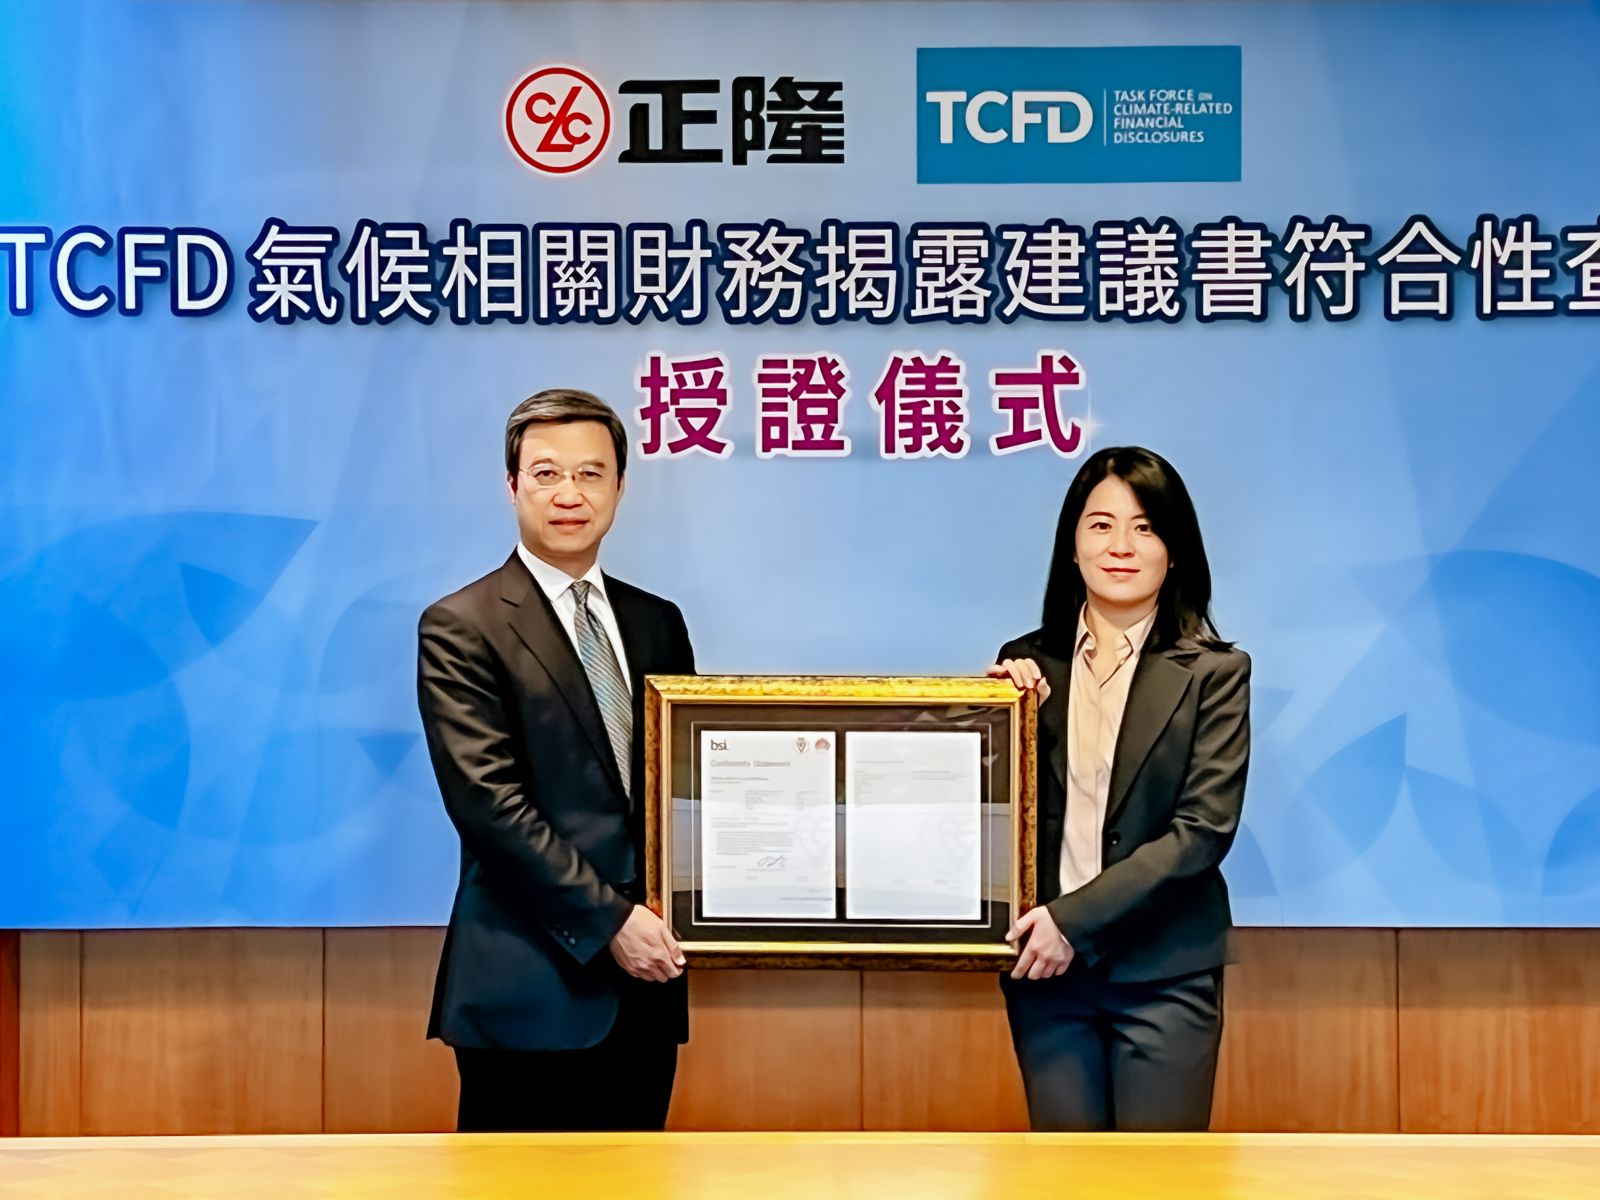 正隆成為台灣第一家通過TCFD查核且獲得最高評級之紙業公司，由董事長鄭舒云代表接受BSI東北亞區總經理蒲樹盛(左)頒發證書。